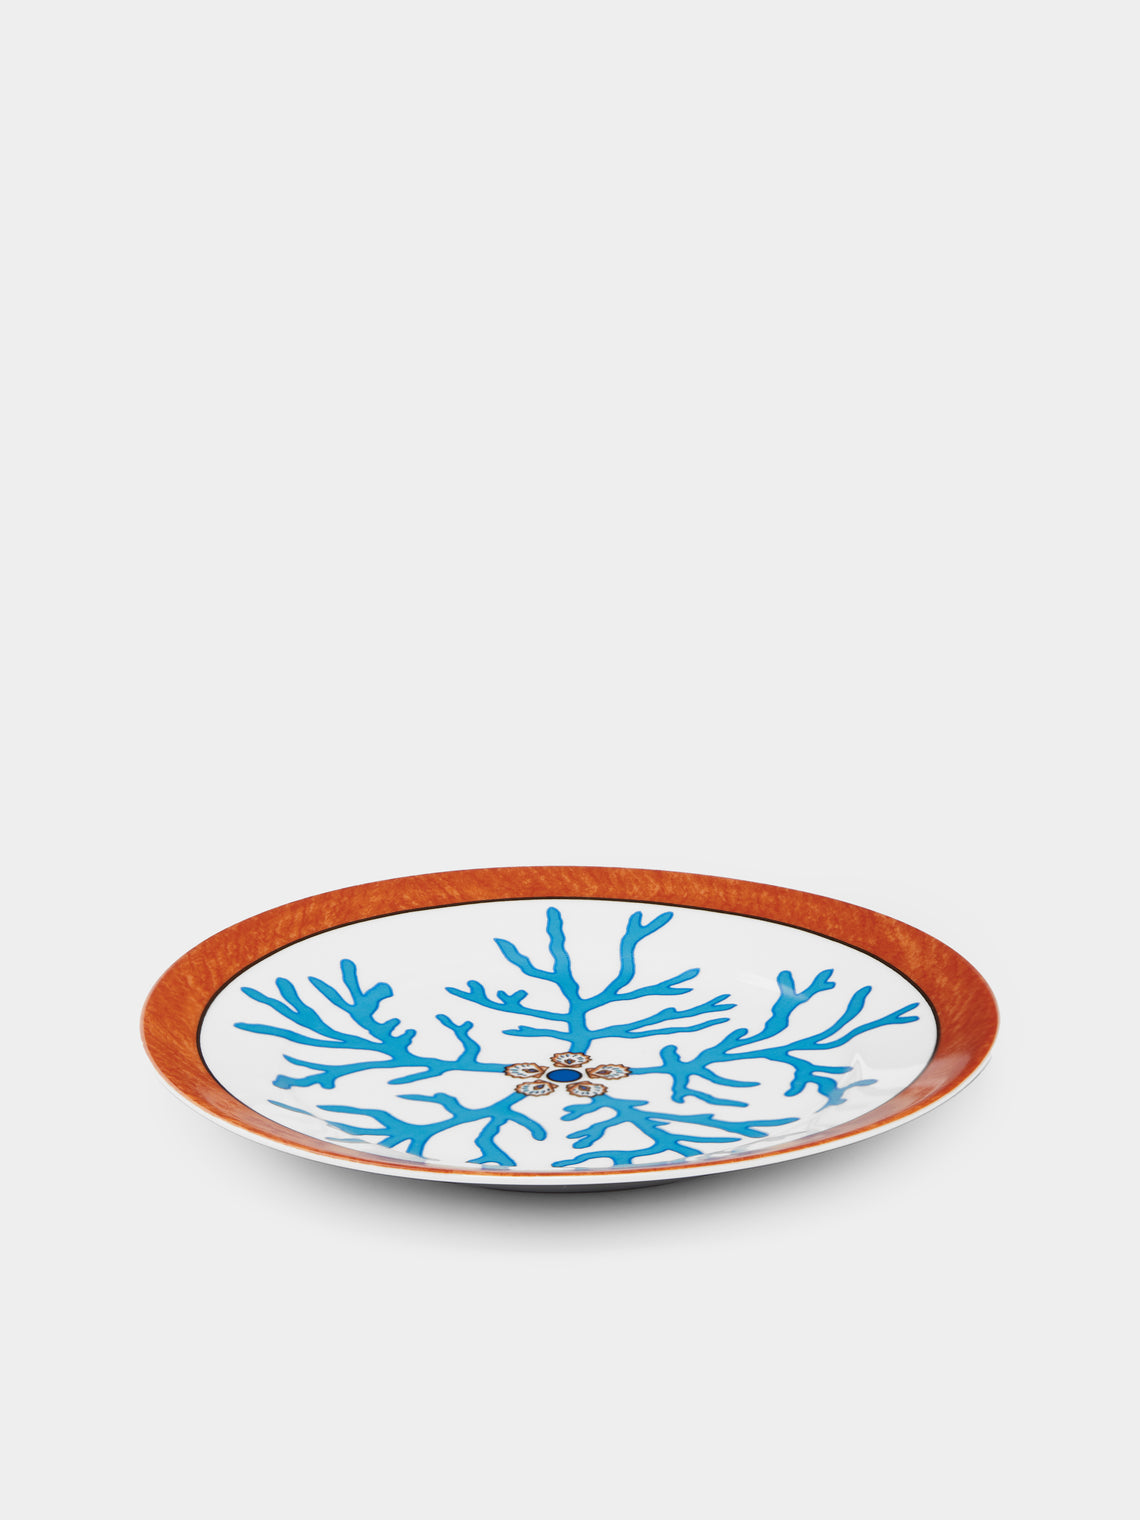 Pinto Paris - Lagon Porcelain Dessert Plate -  - ABASK